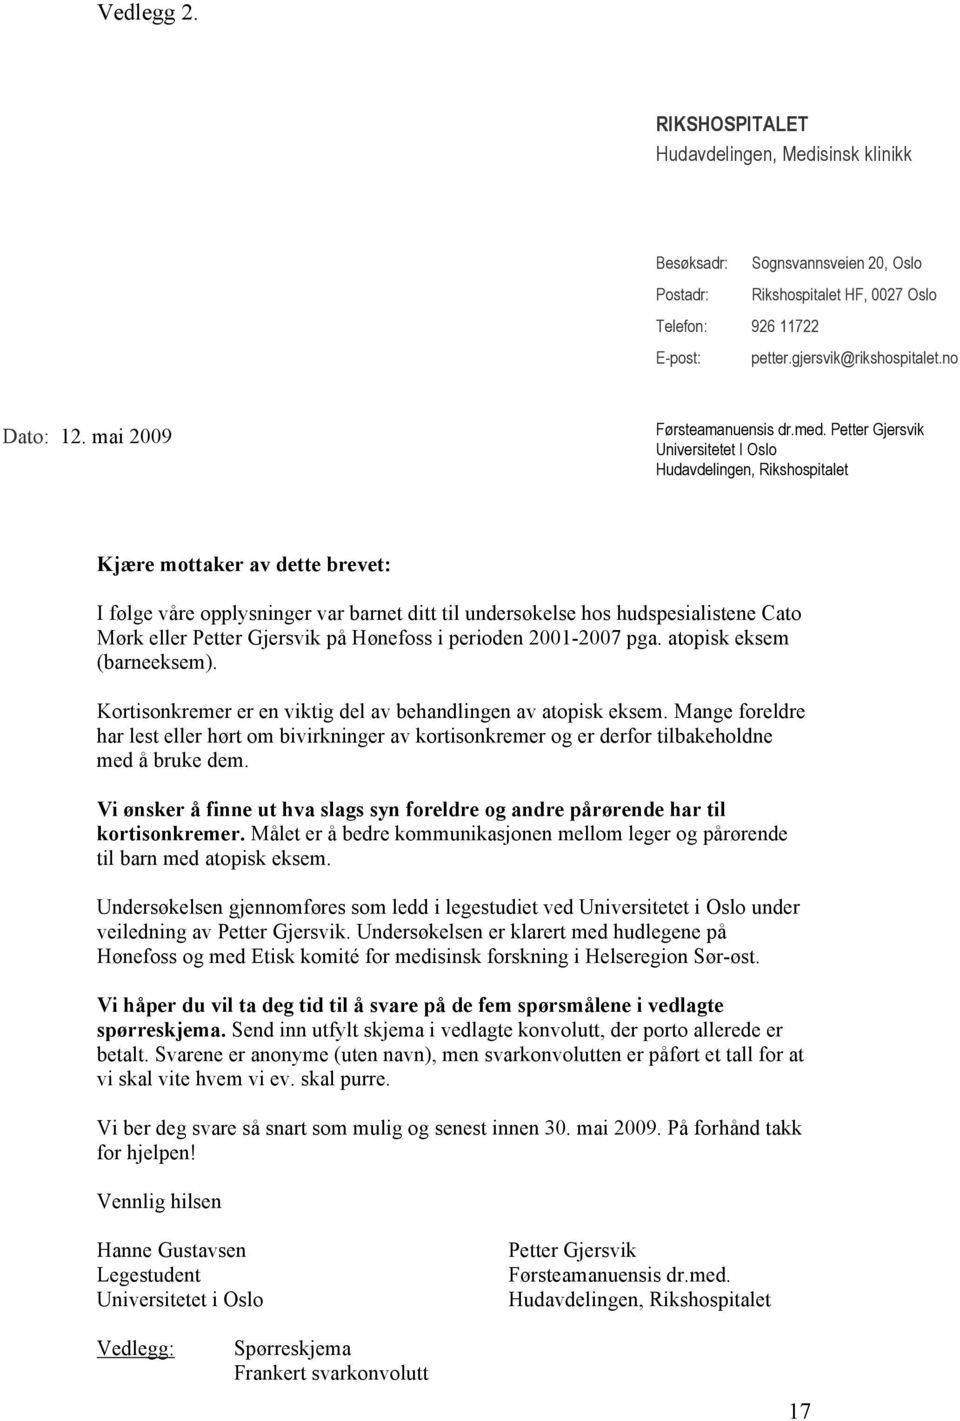 Petter Gjersvik Universitetet I Oslo Hudavdelingen, Rikshospitalet Kjære mottaker av dette brevet: I følge våre opplysninger var barnet ditt til undersøkelse hos hudspesialistene Cato Mørk eller